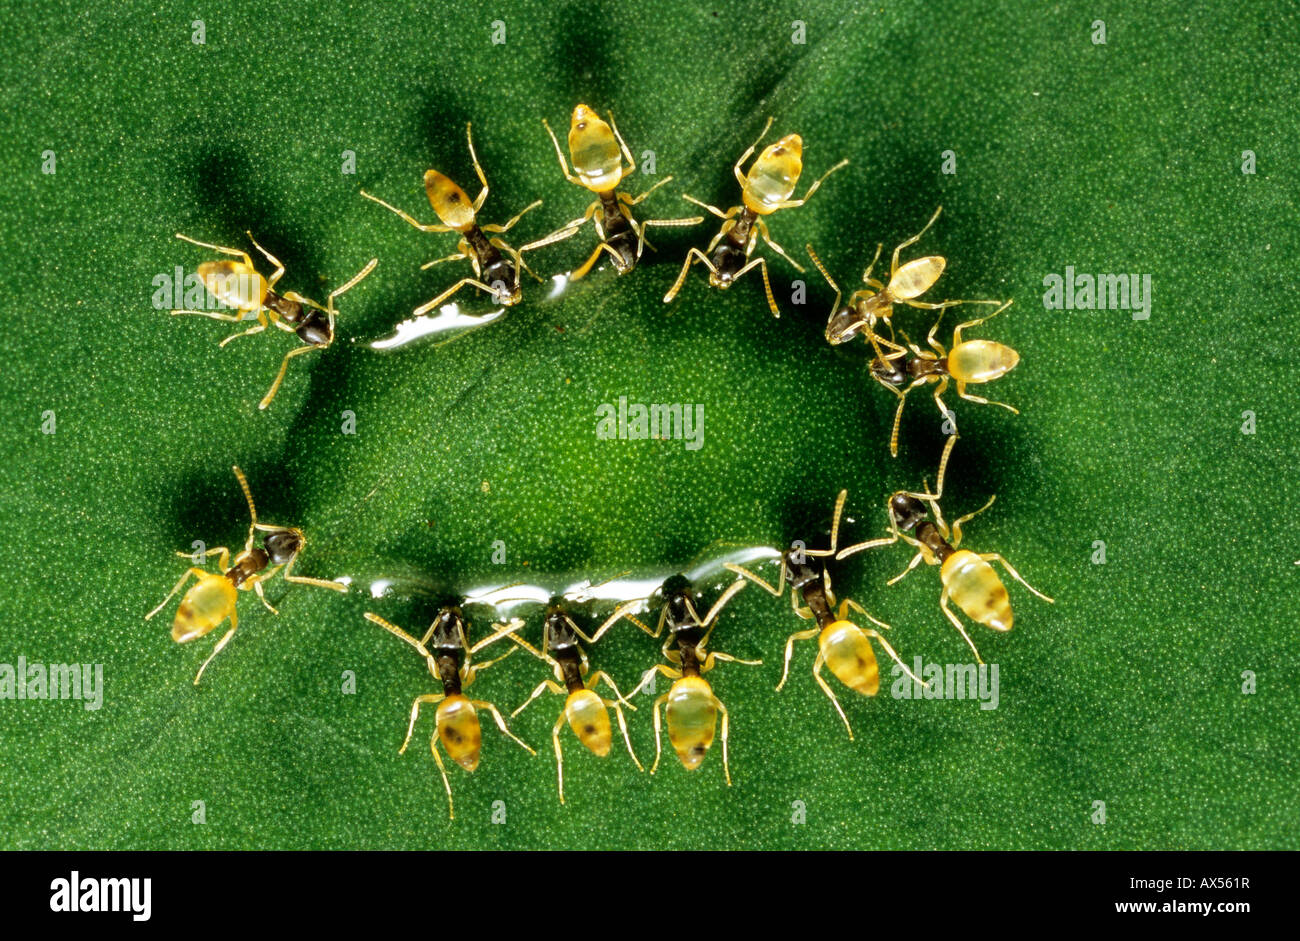 Les fourmis se nourrissent d'une goutte de nectar au Nicaragua Banque D'Images